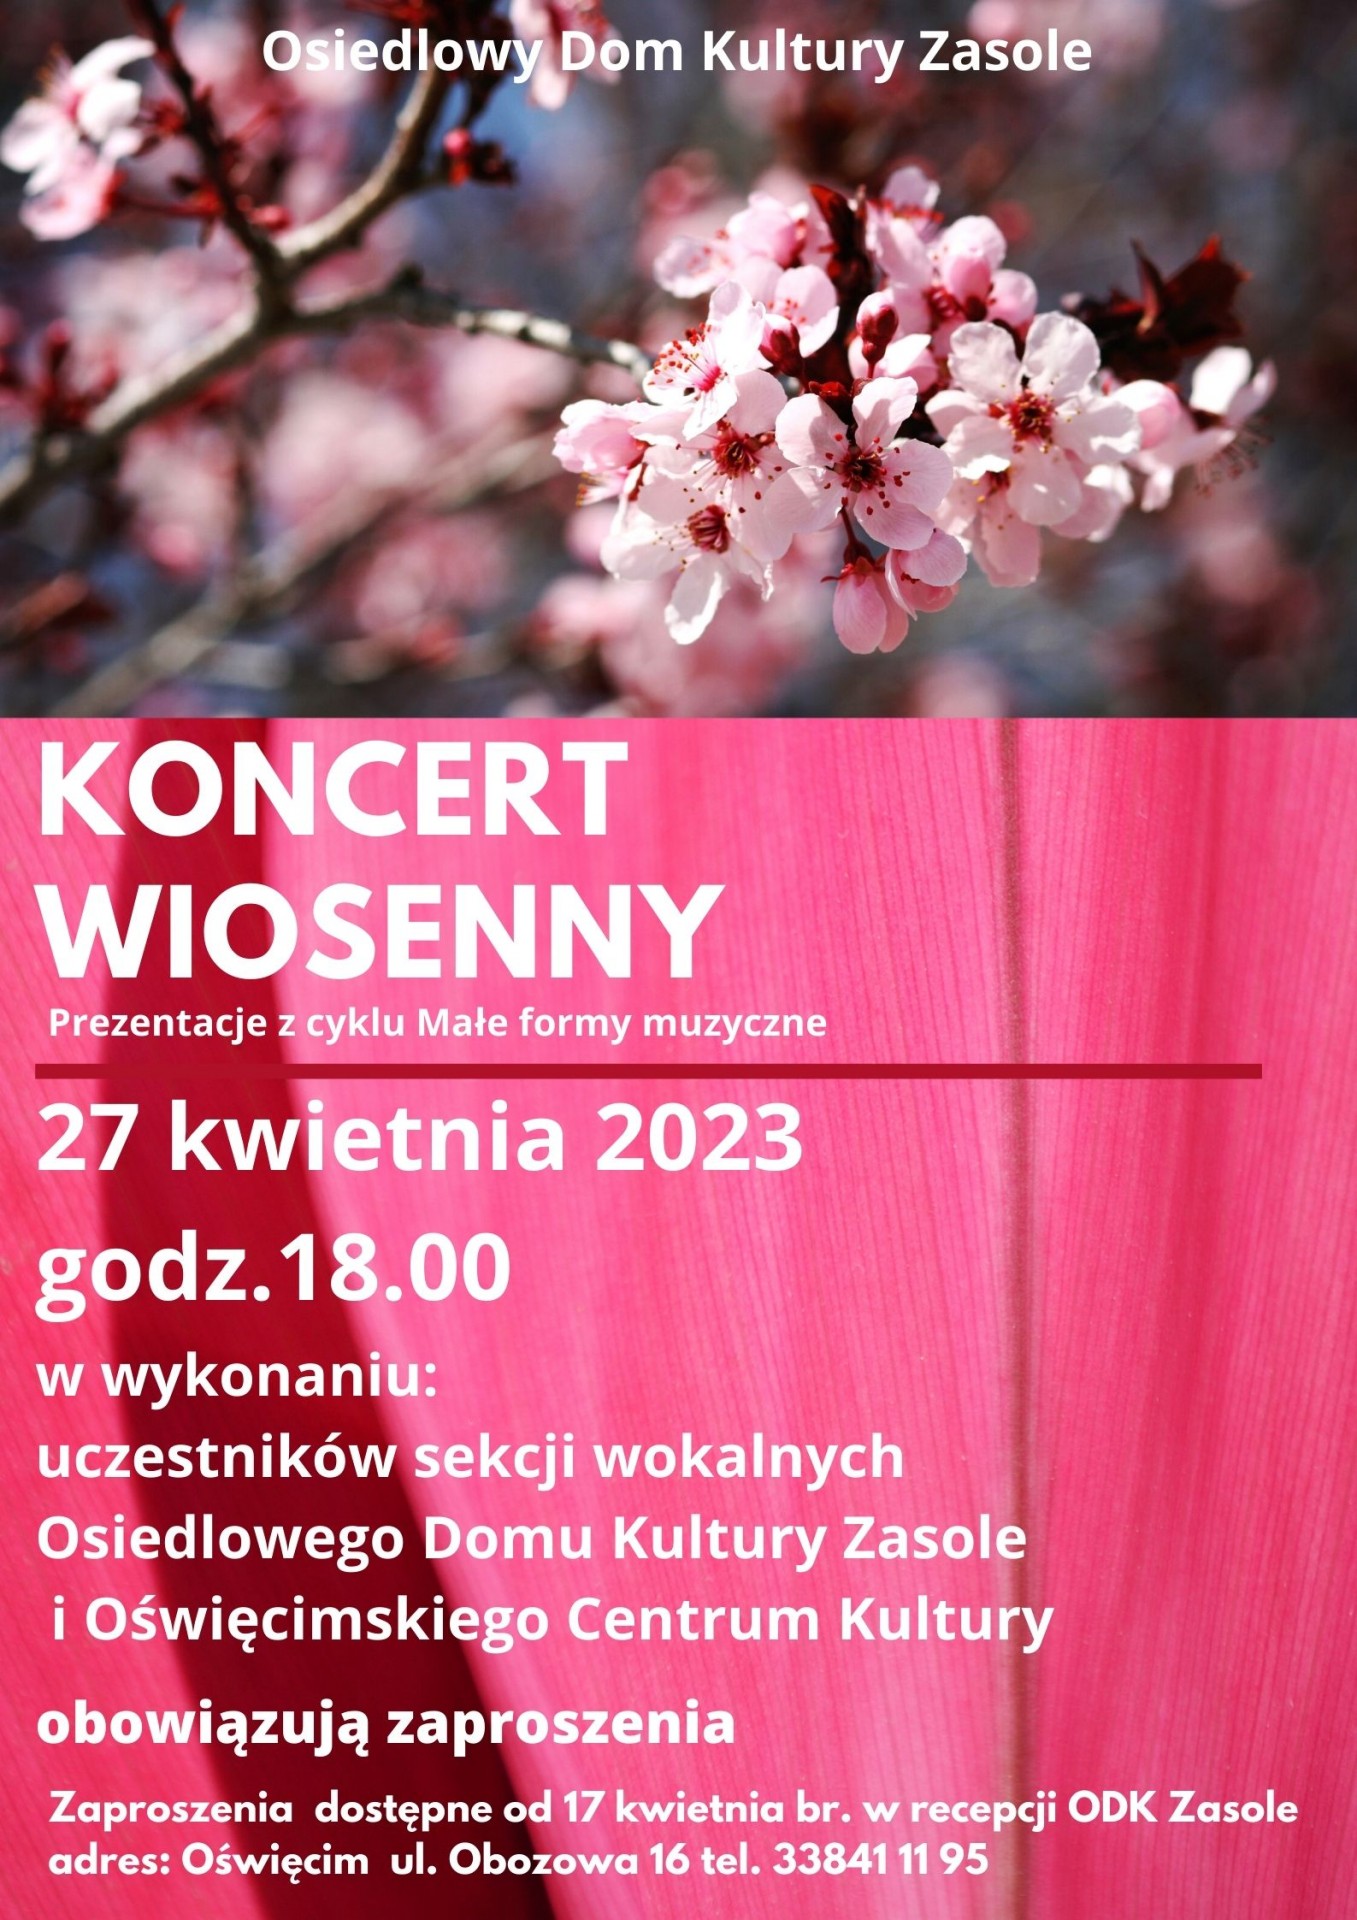 Miłośników muzyki i wiosny zapraszamy na Koncert Wiosenny w wykonaniu sekcji wokalnych Osiedlowego Domu Kultury Zasole i Oświęcimskiego Centrum Kultury.